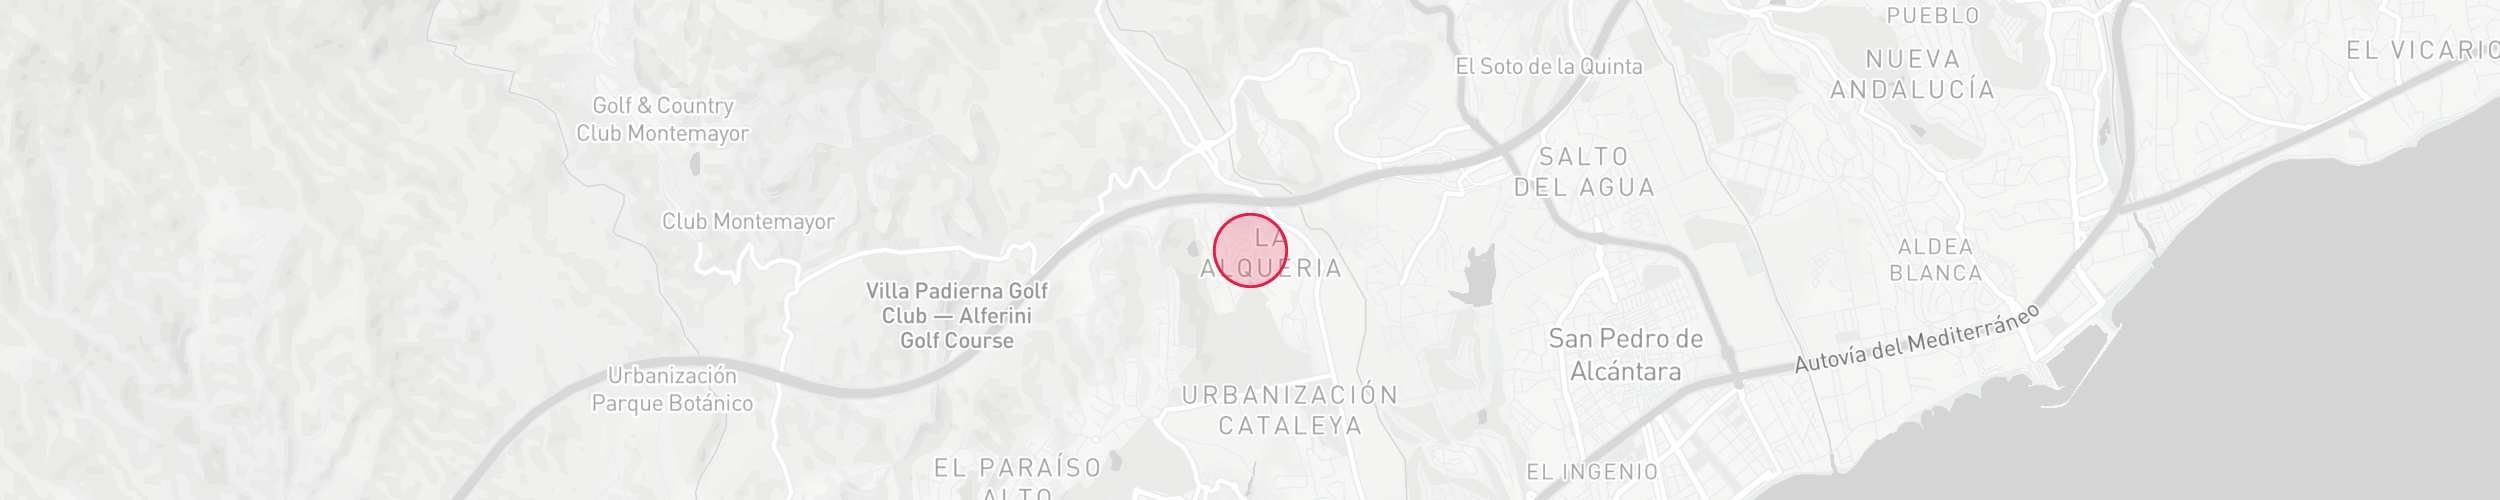 Mapa de localización de la propiedad - La Alqueria